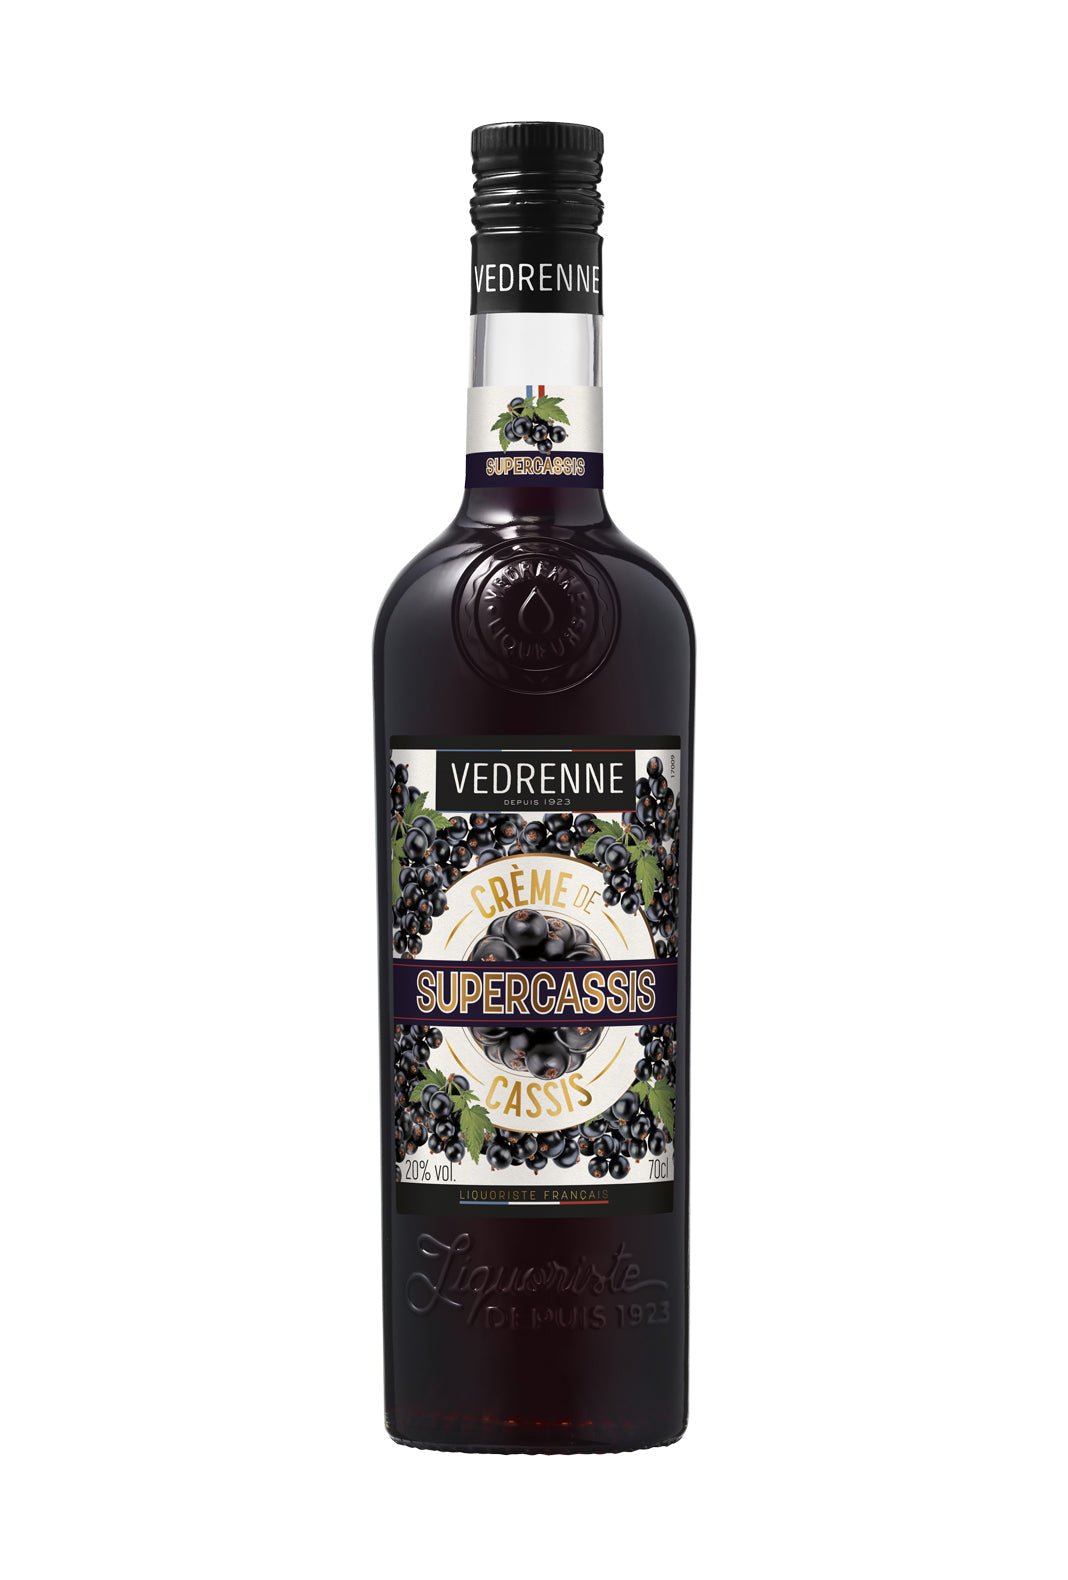 Vedrenne Supercassis Blackcurrant 20% 700ml | Syrup | Shop online at Spirits of France